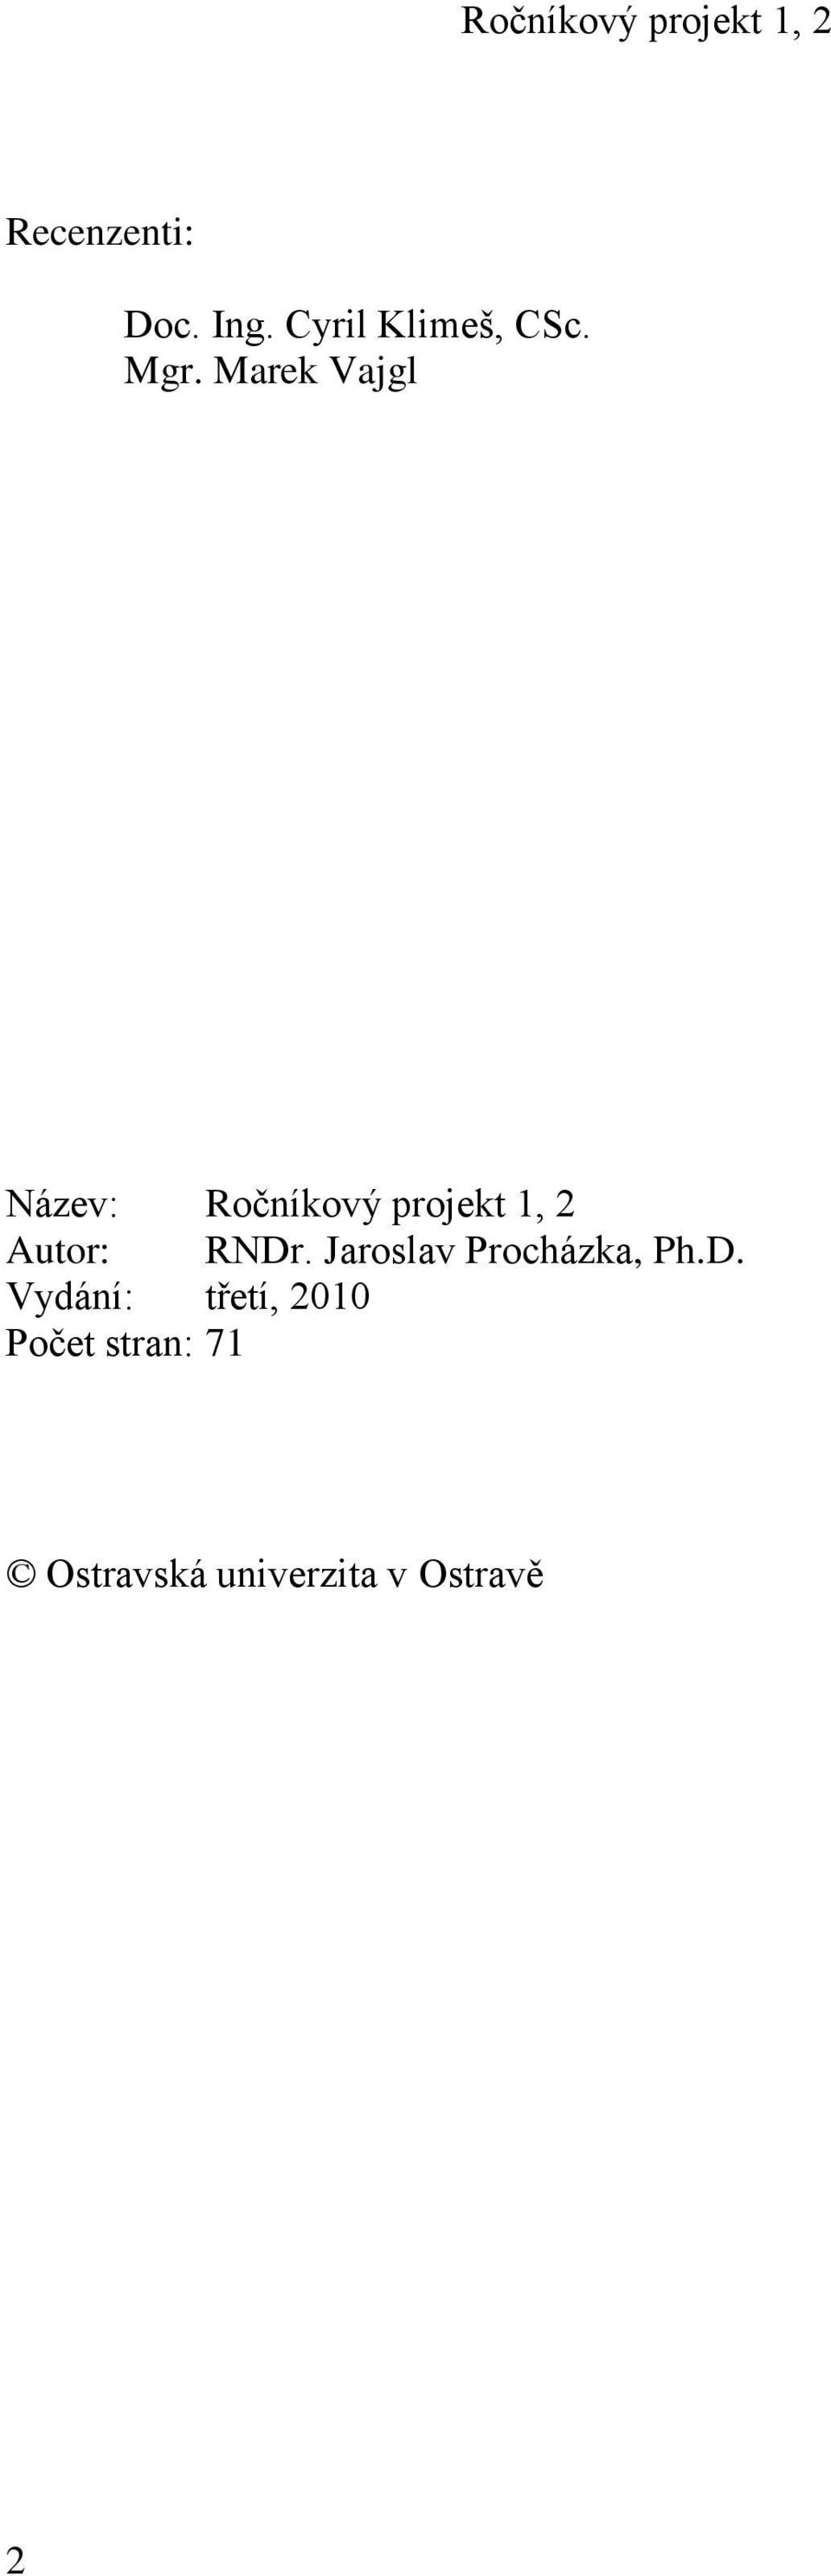 RNDr. Jaroslav Procházka, Ph.D. Vydání: třetí,